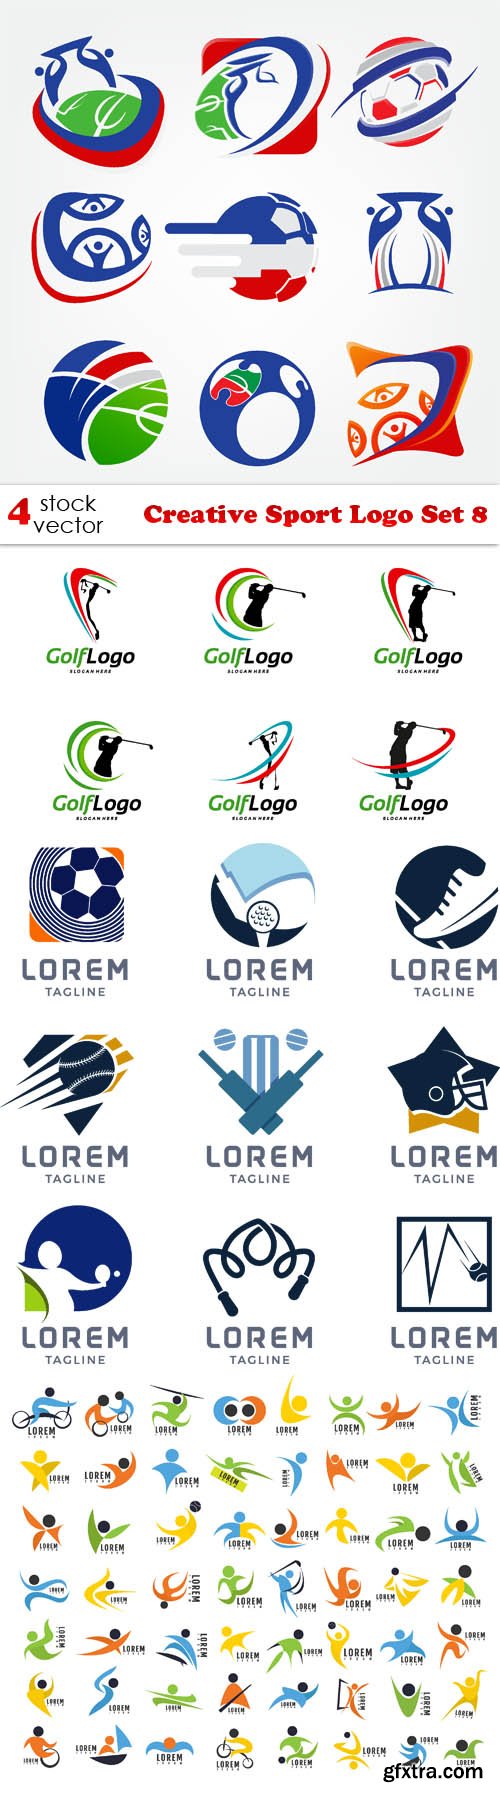 Vectors - Creative Sport Logo Set 8